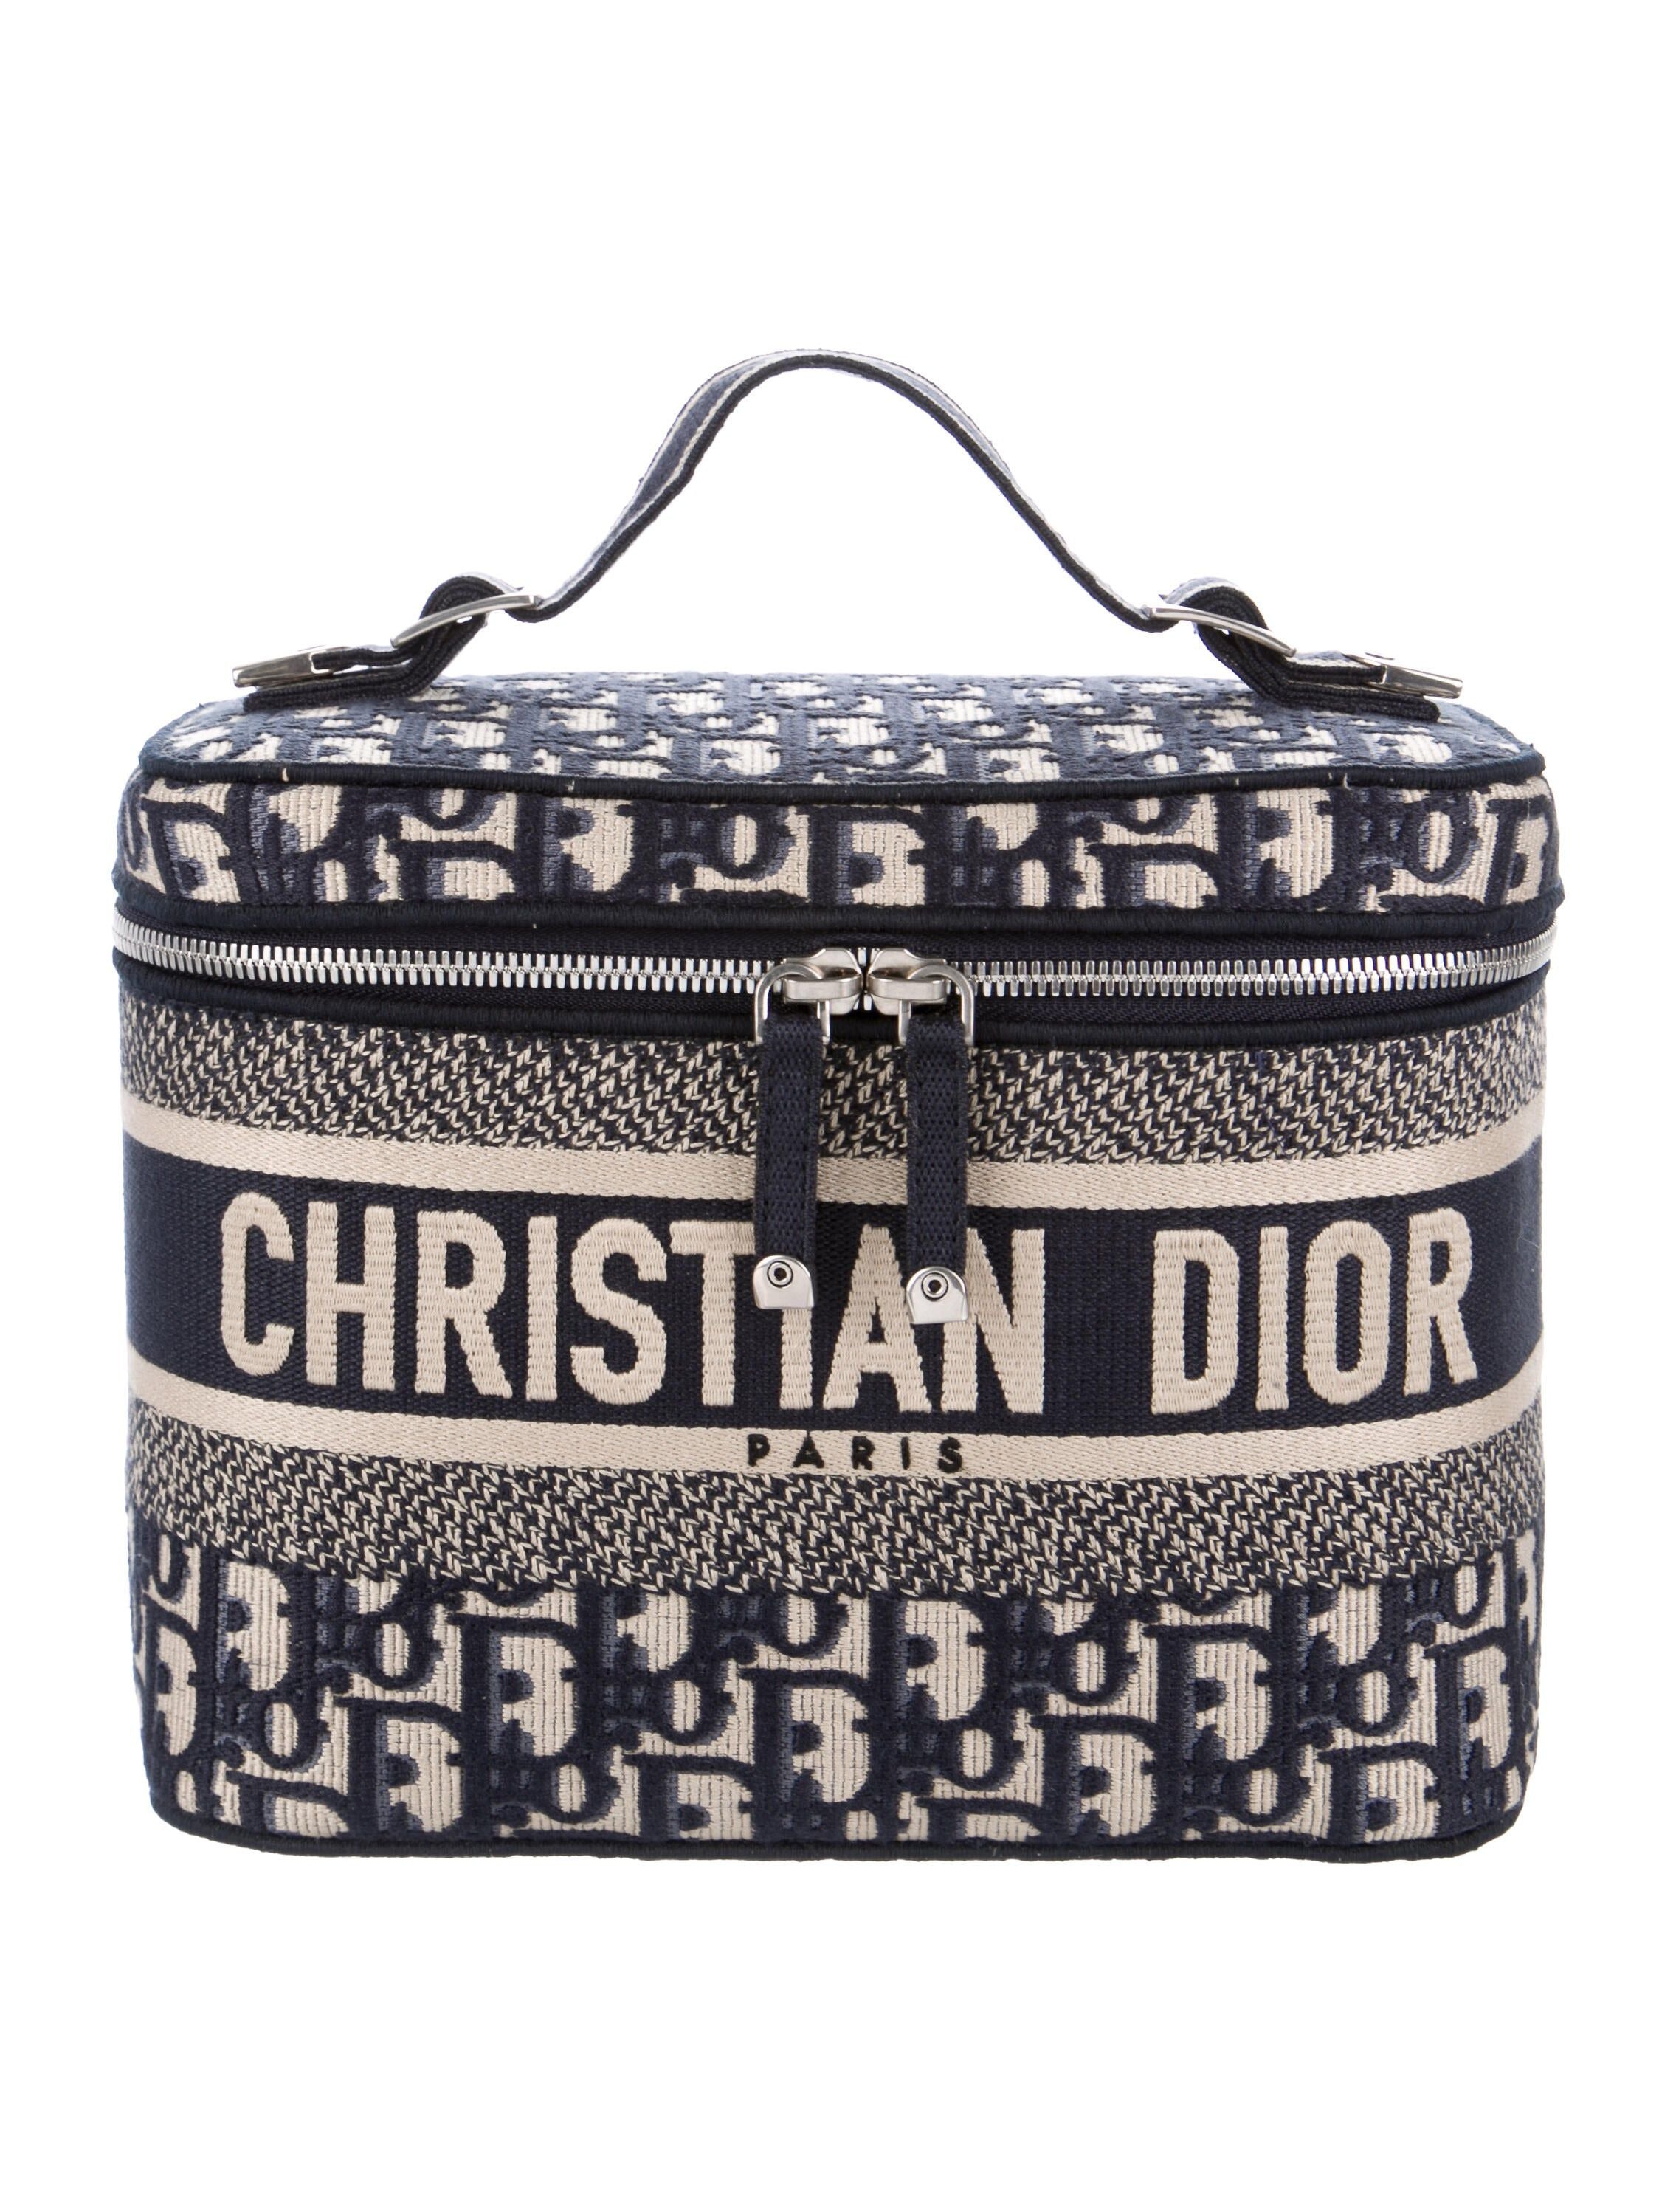 Dior Authenticated Vanity Lady Dior Handbag